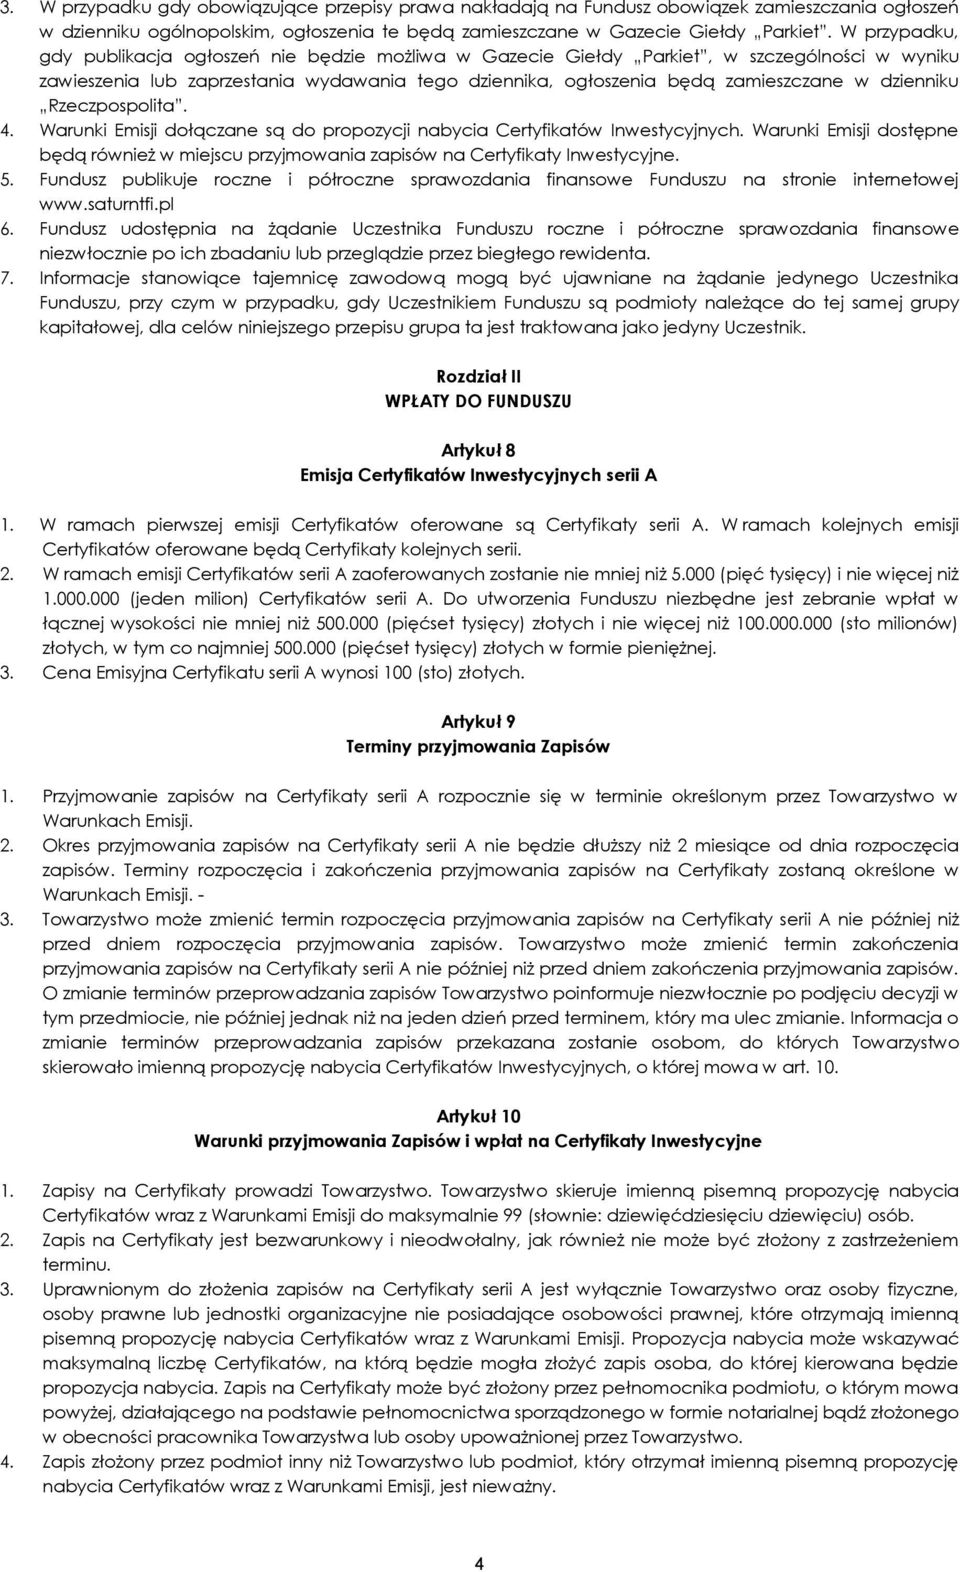 dzienniku Rzeczpospolita. 4. Warunki Emisji dołączane są do propozycji nabycia Certyfikatów Inwestycyjnych.